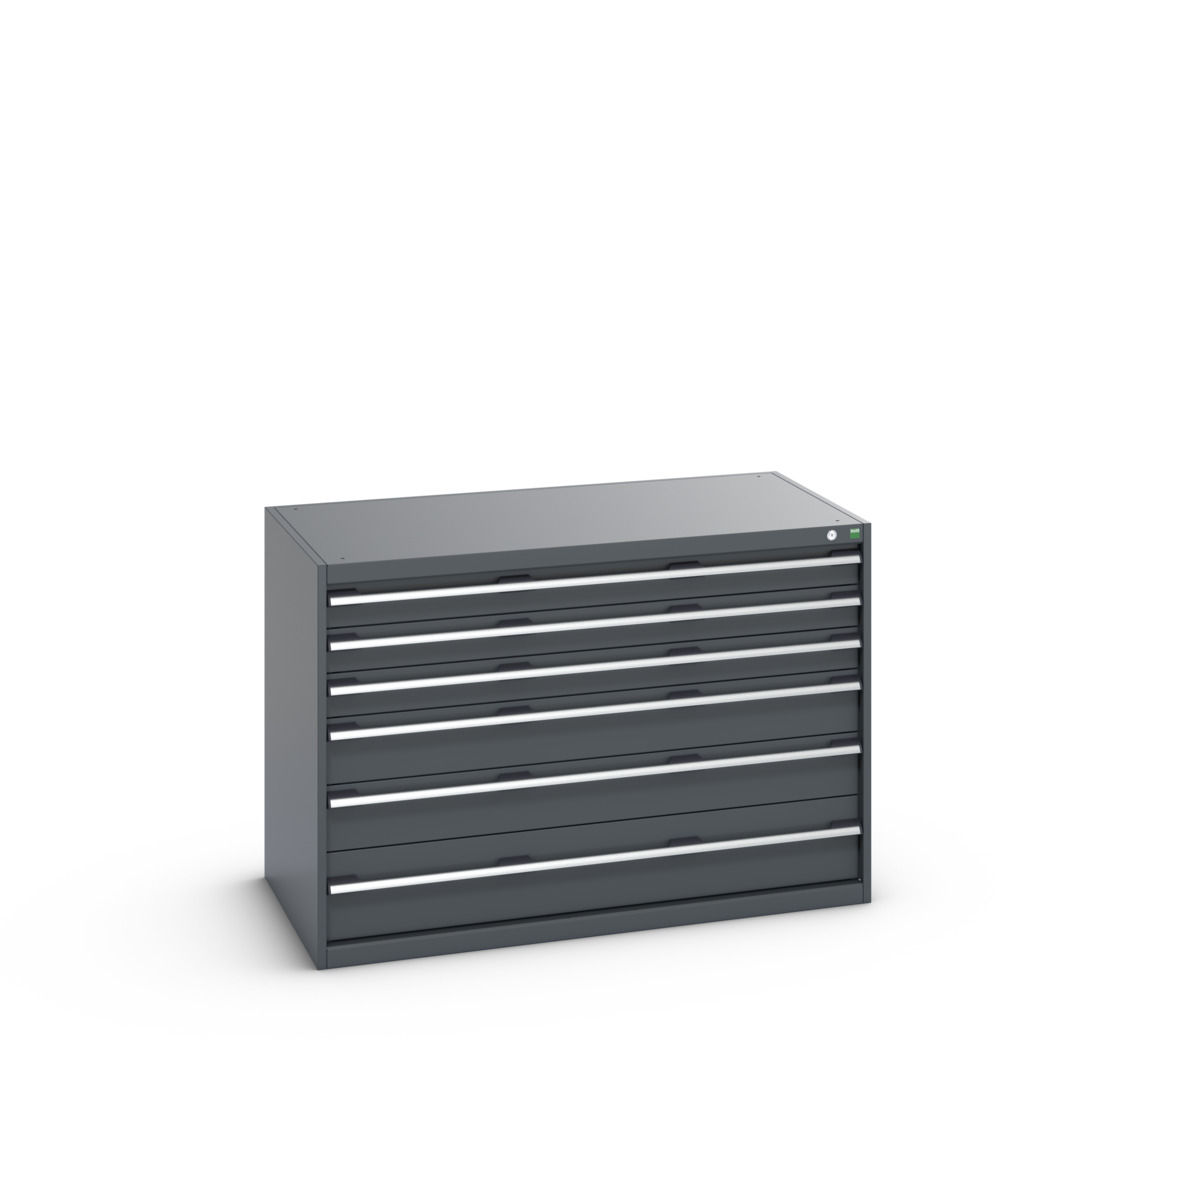 40030086.77V - cubio drawer cabinet